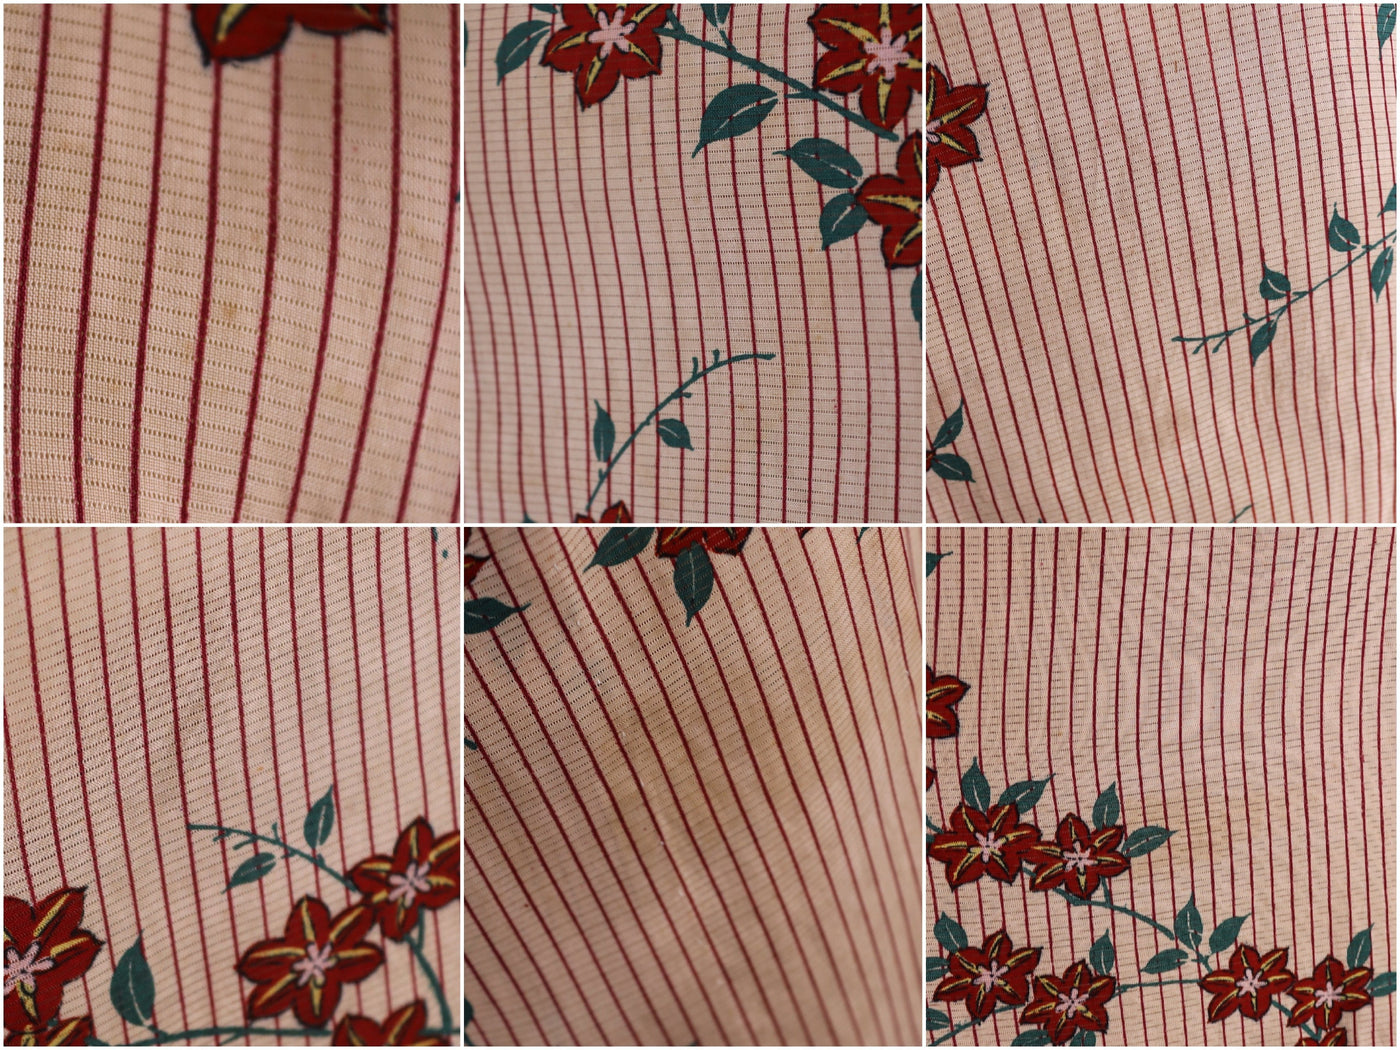 Vintage 1930s 1940s Silk Kimono Robe / Tan & Red Floral - ThisBlueBird